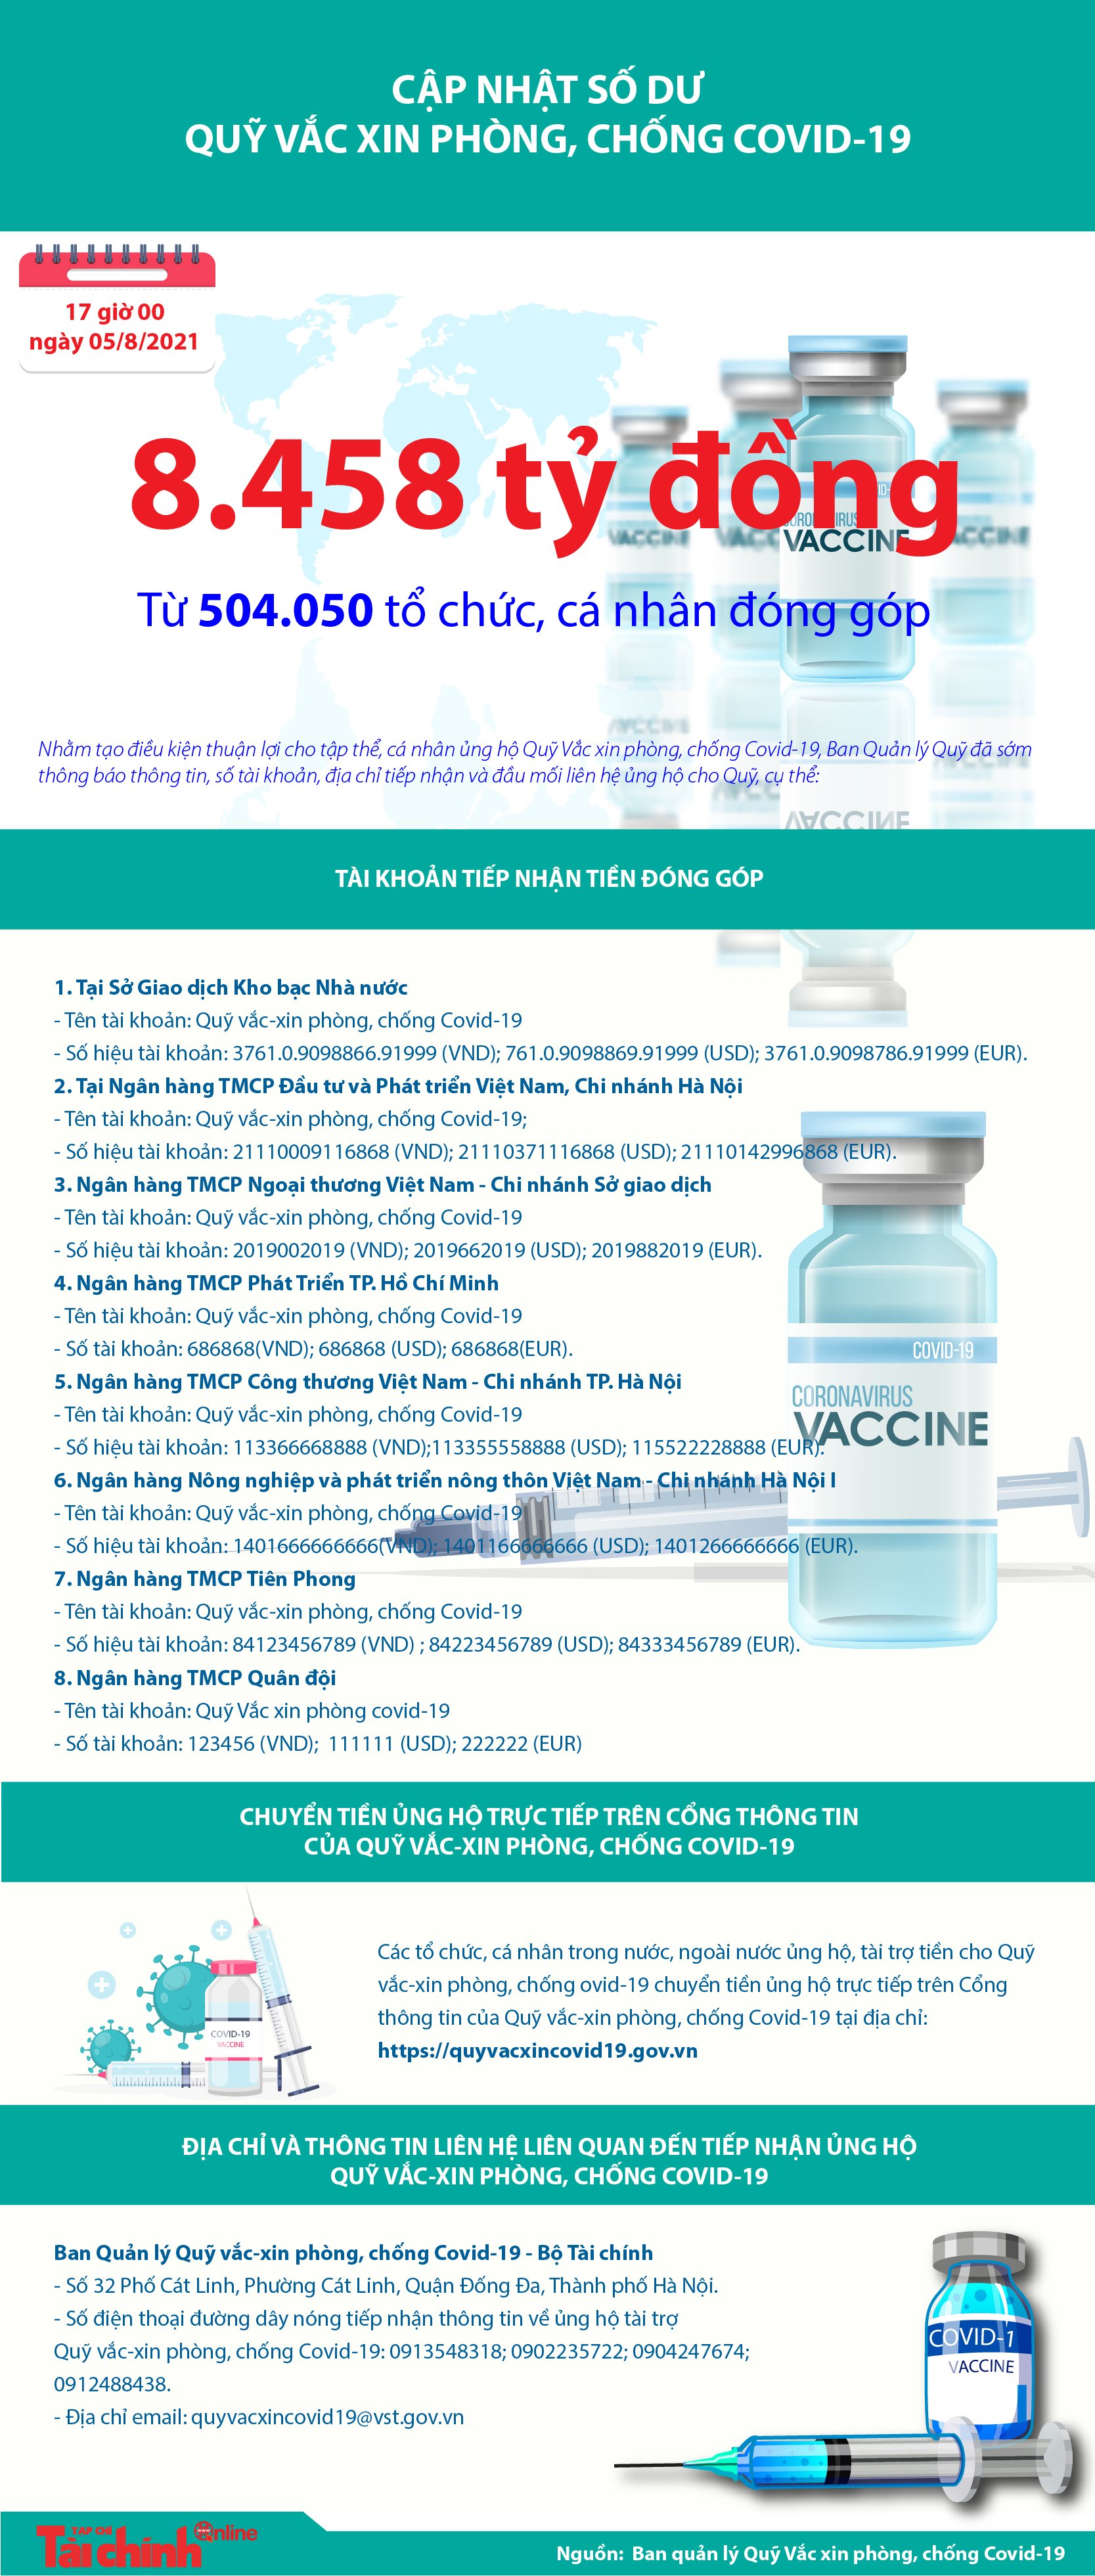 [Infographics] Quỹ Vắc xin phòng, chống COVID-19 đã tiếp nhận ủng hộ 8.458 tỷ đồng - Ảnh 1